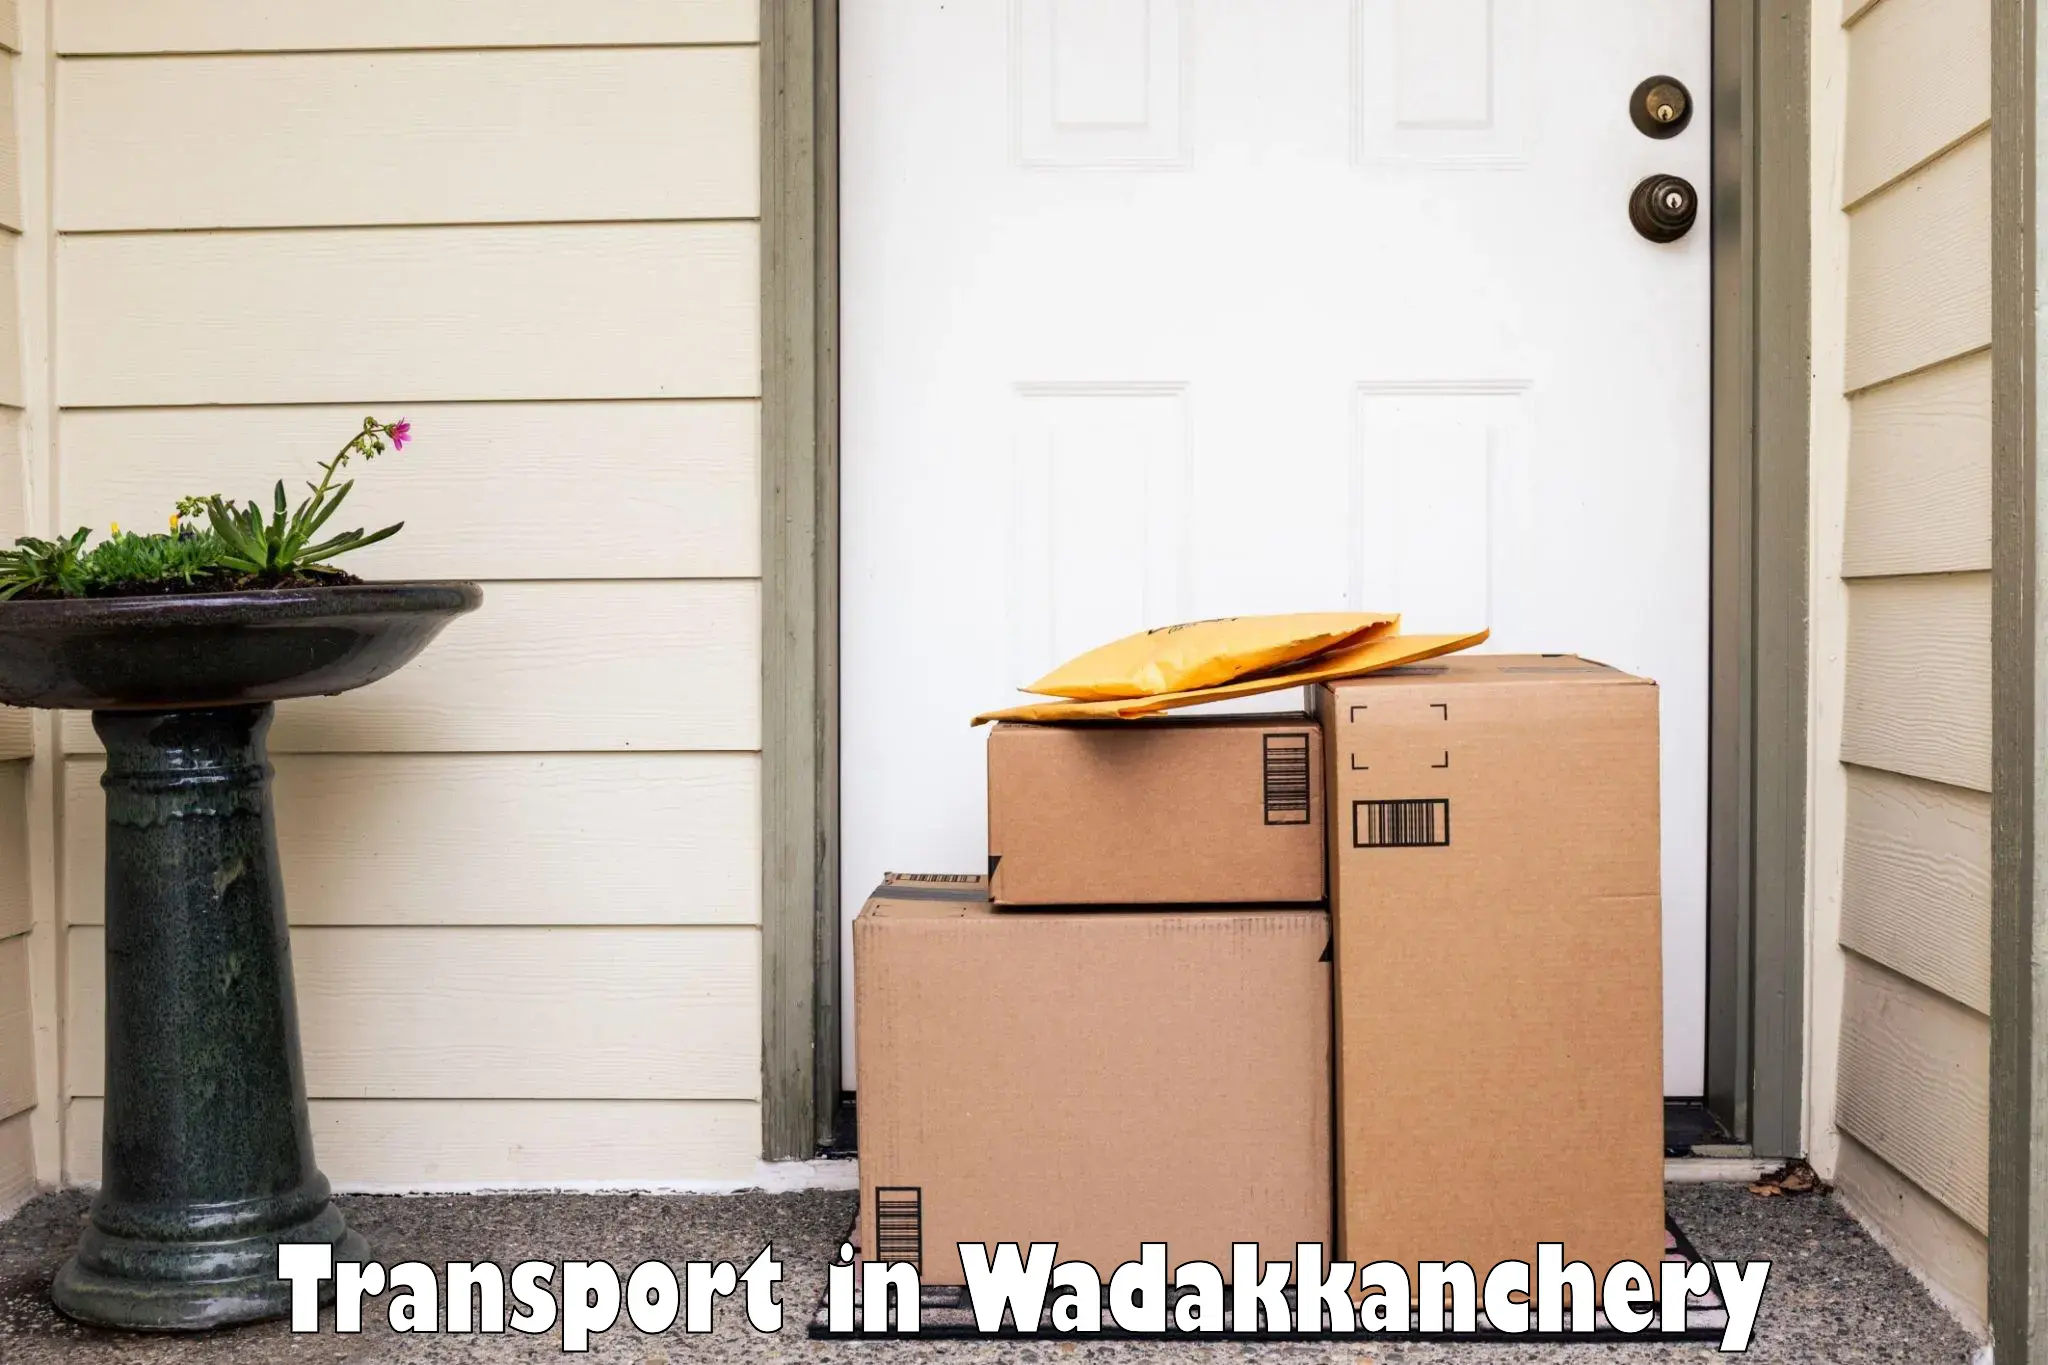 Daily parcel service transport in Wadakkanchery